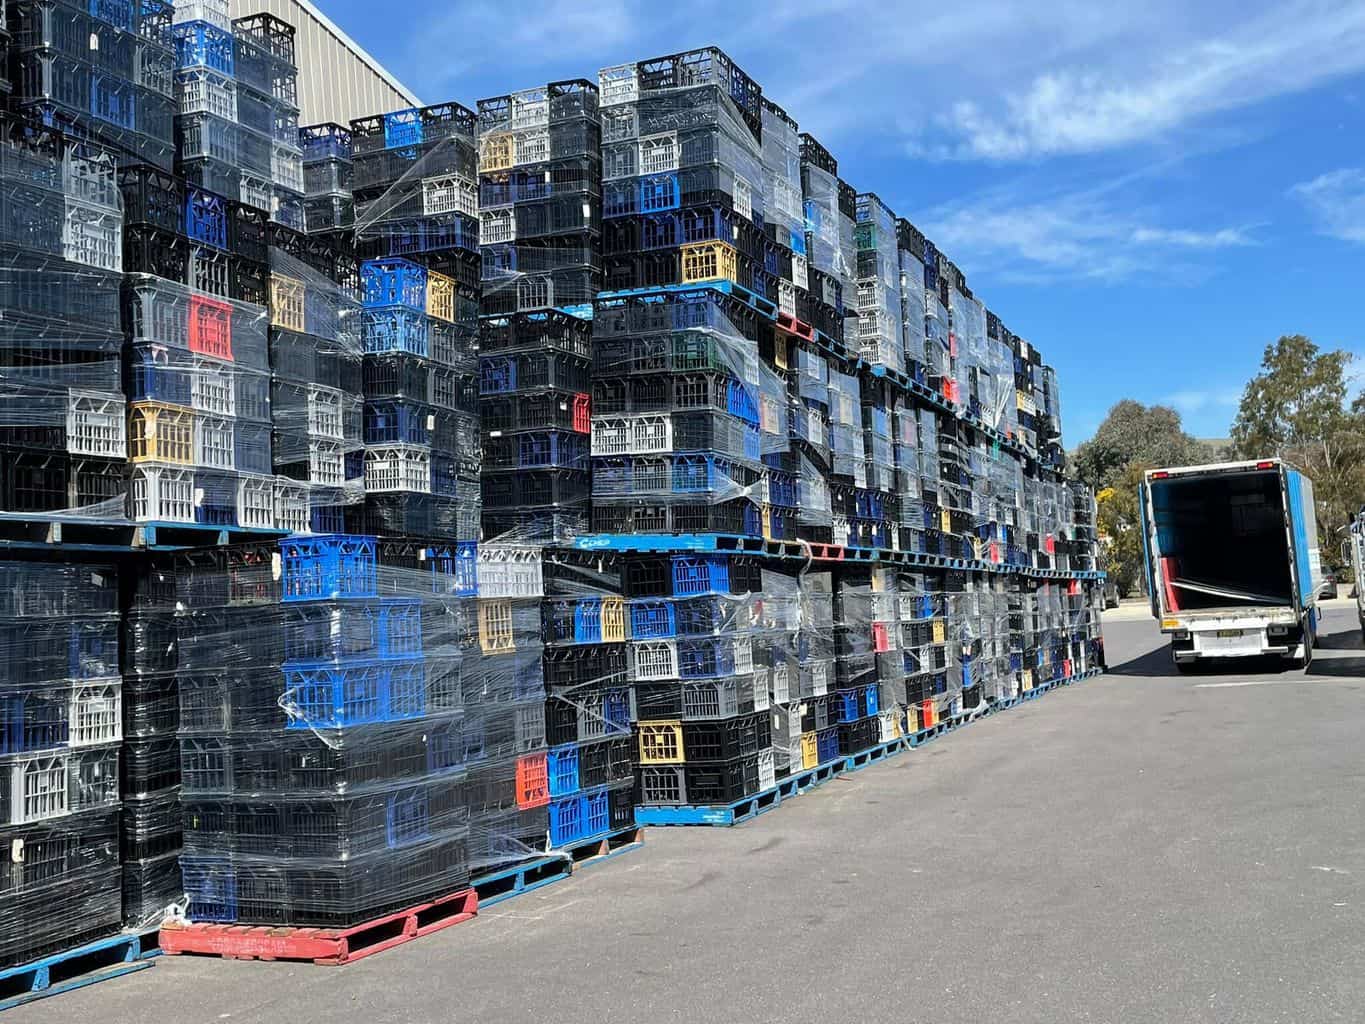 So many crates!